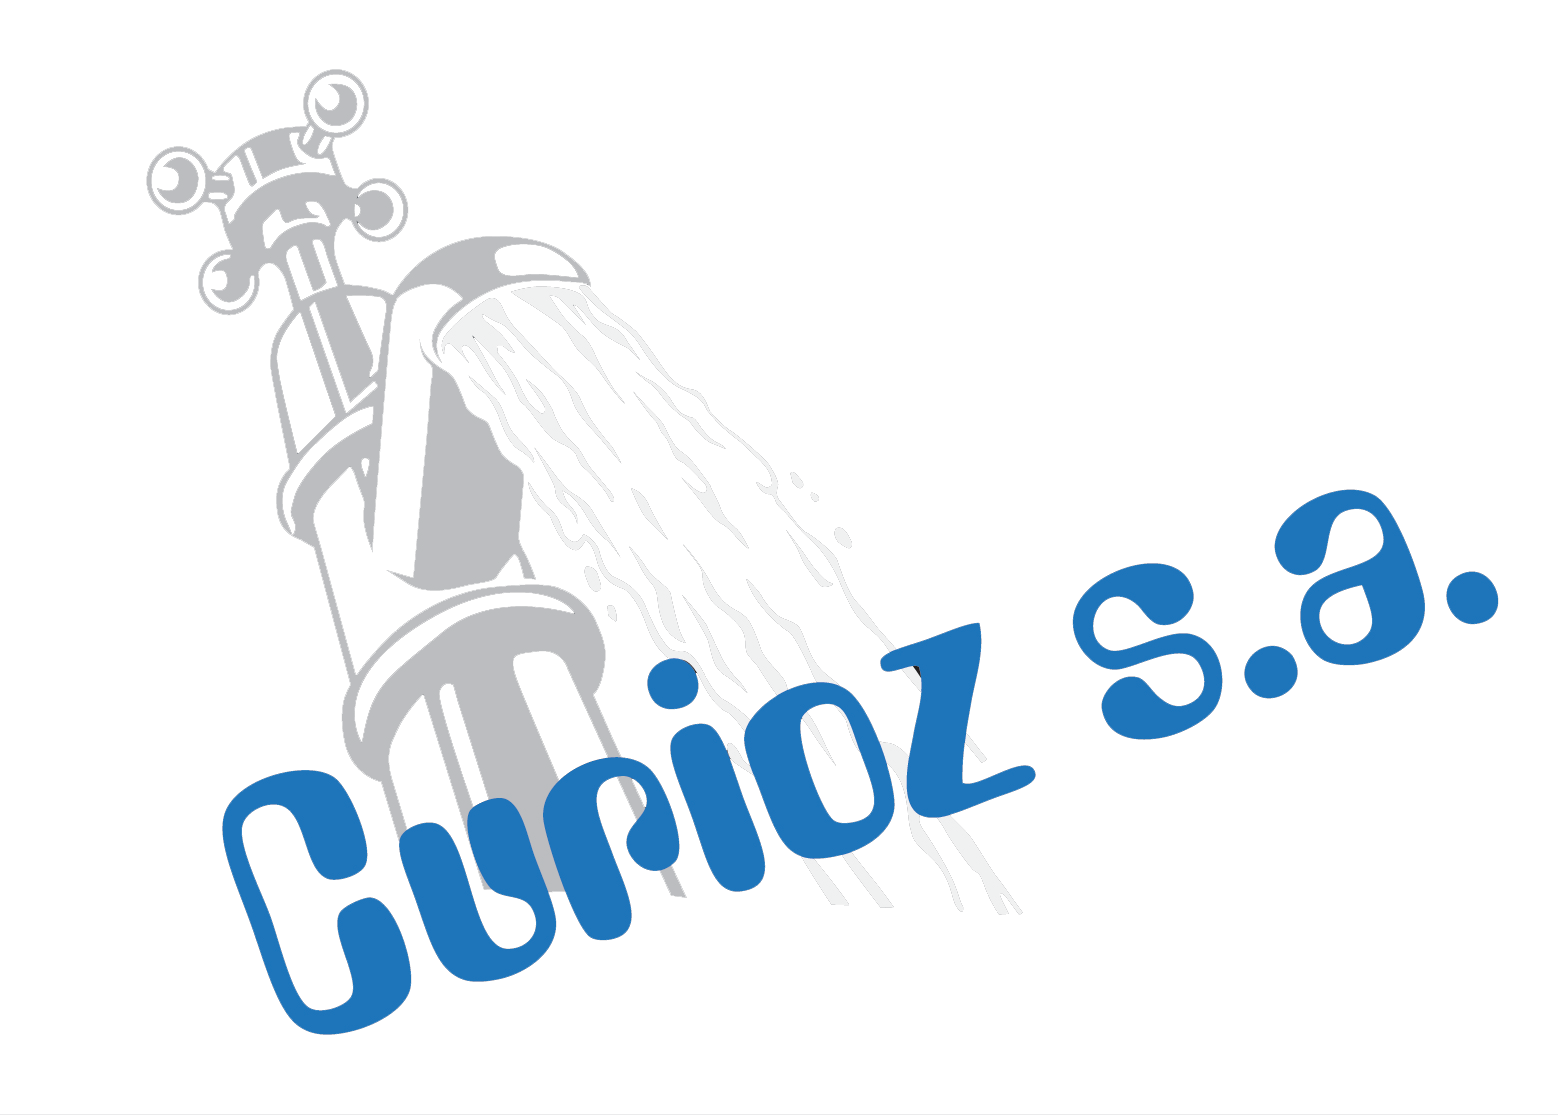 Curioz-logo-new-6